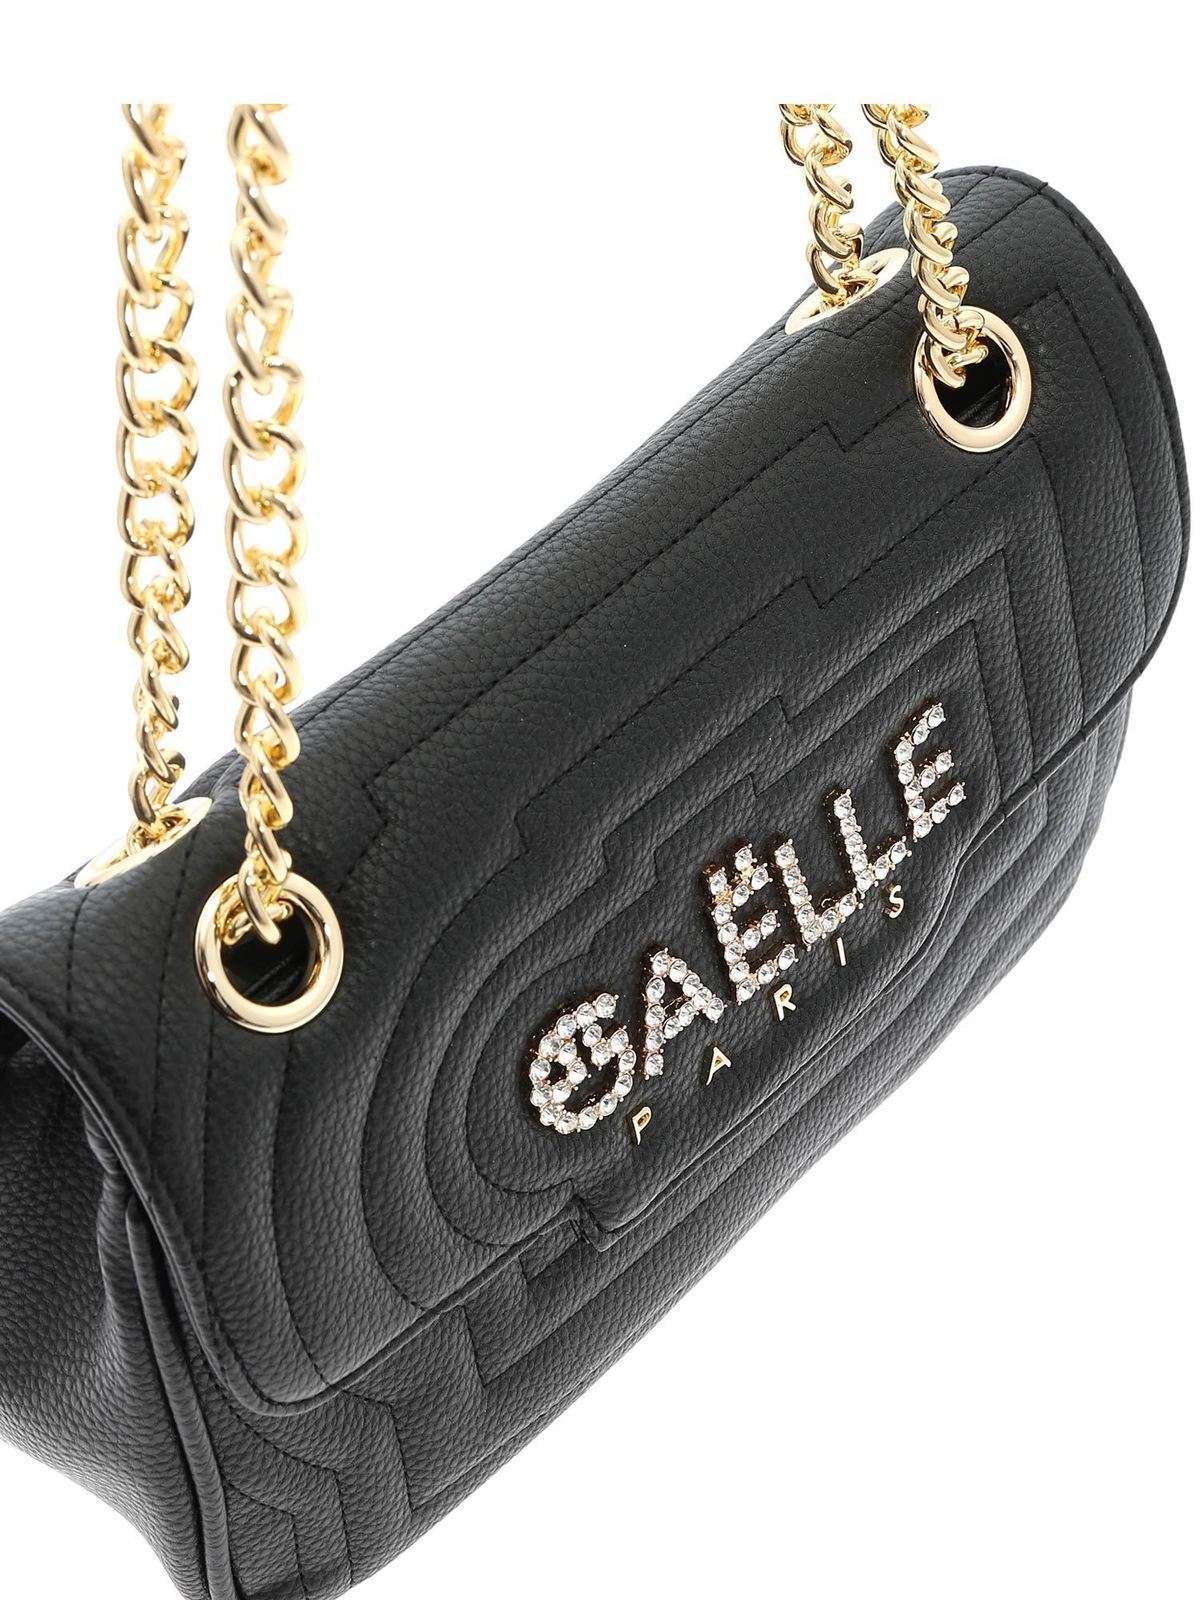 Gaelle black clutch bag with gold shoulder strap